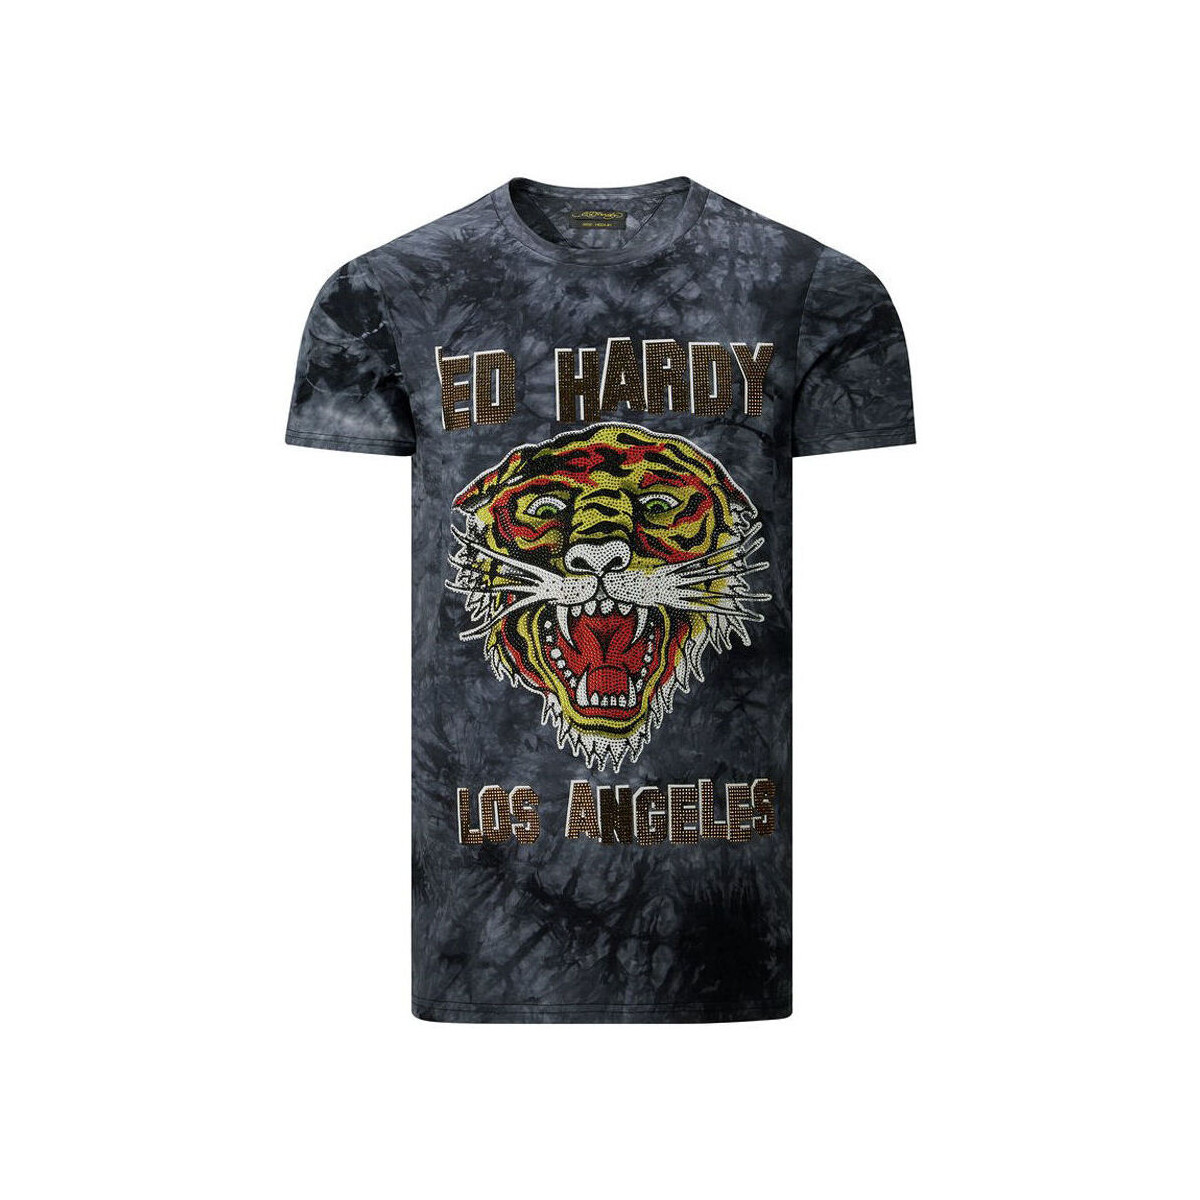 vaatteet Miehet Lyhythihainen t-paita Ed Hardy Los tigre t-shirt black Musta